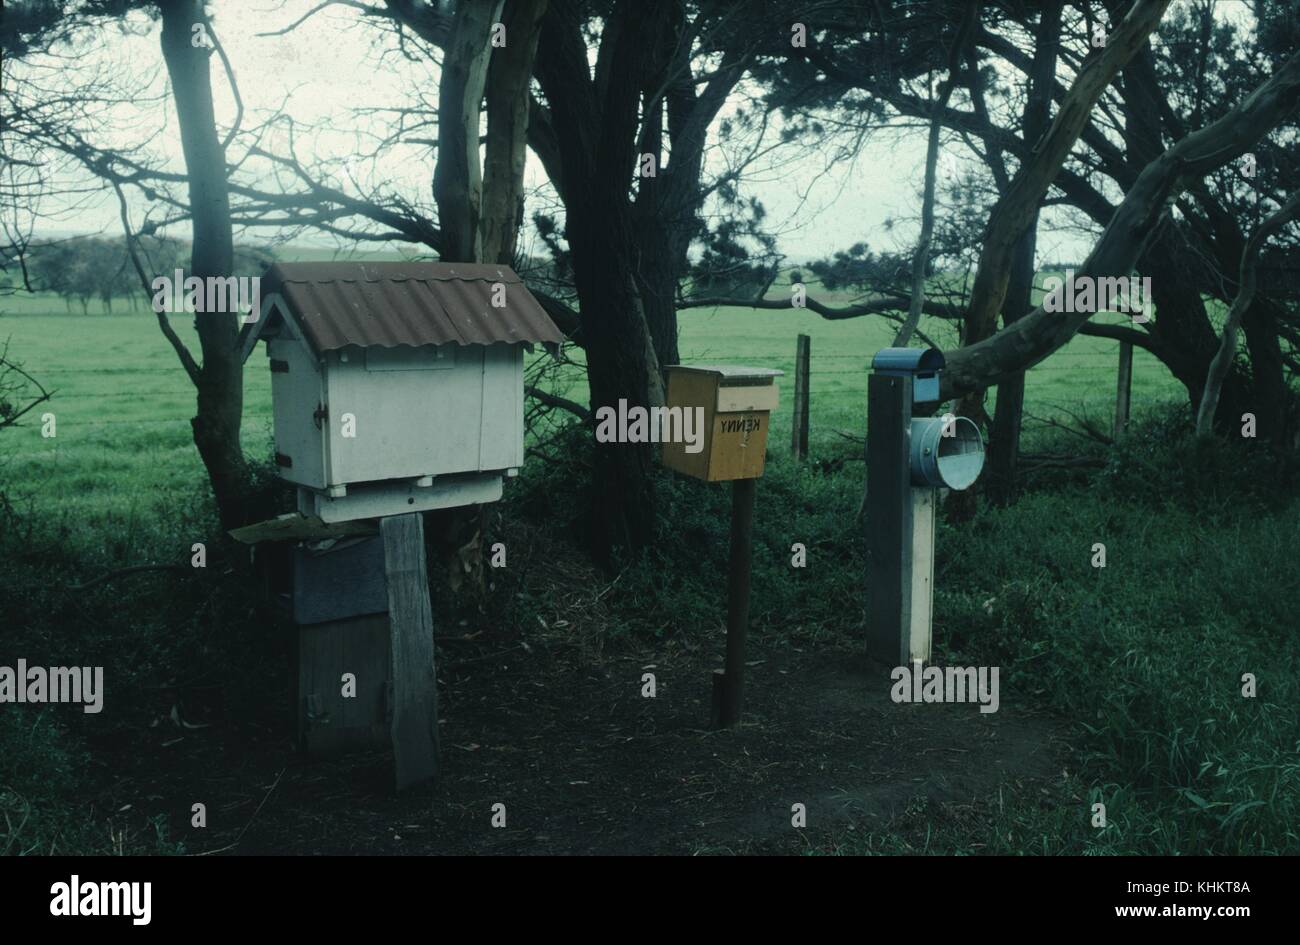 Ein Foto von drei handgefertigten Mailboxen, die Mailbox auf der linken Seite ist groß und hat ein Haus zu ähneln, der Mitte Mailbox ist eine einfache Box mit einer Klappe, die an die Mailbox auf der rechten Seite besteht aus zwei Ebenen sowohl zumindest teilweise durch große Dosen, hinter der sich die Postfächer liegt eine Reihe von Bäumen, über die hinaus ist ein open green field, 1965. Stockfoto